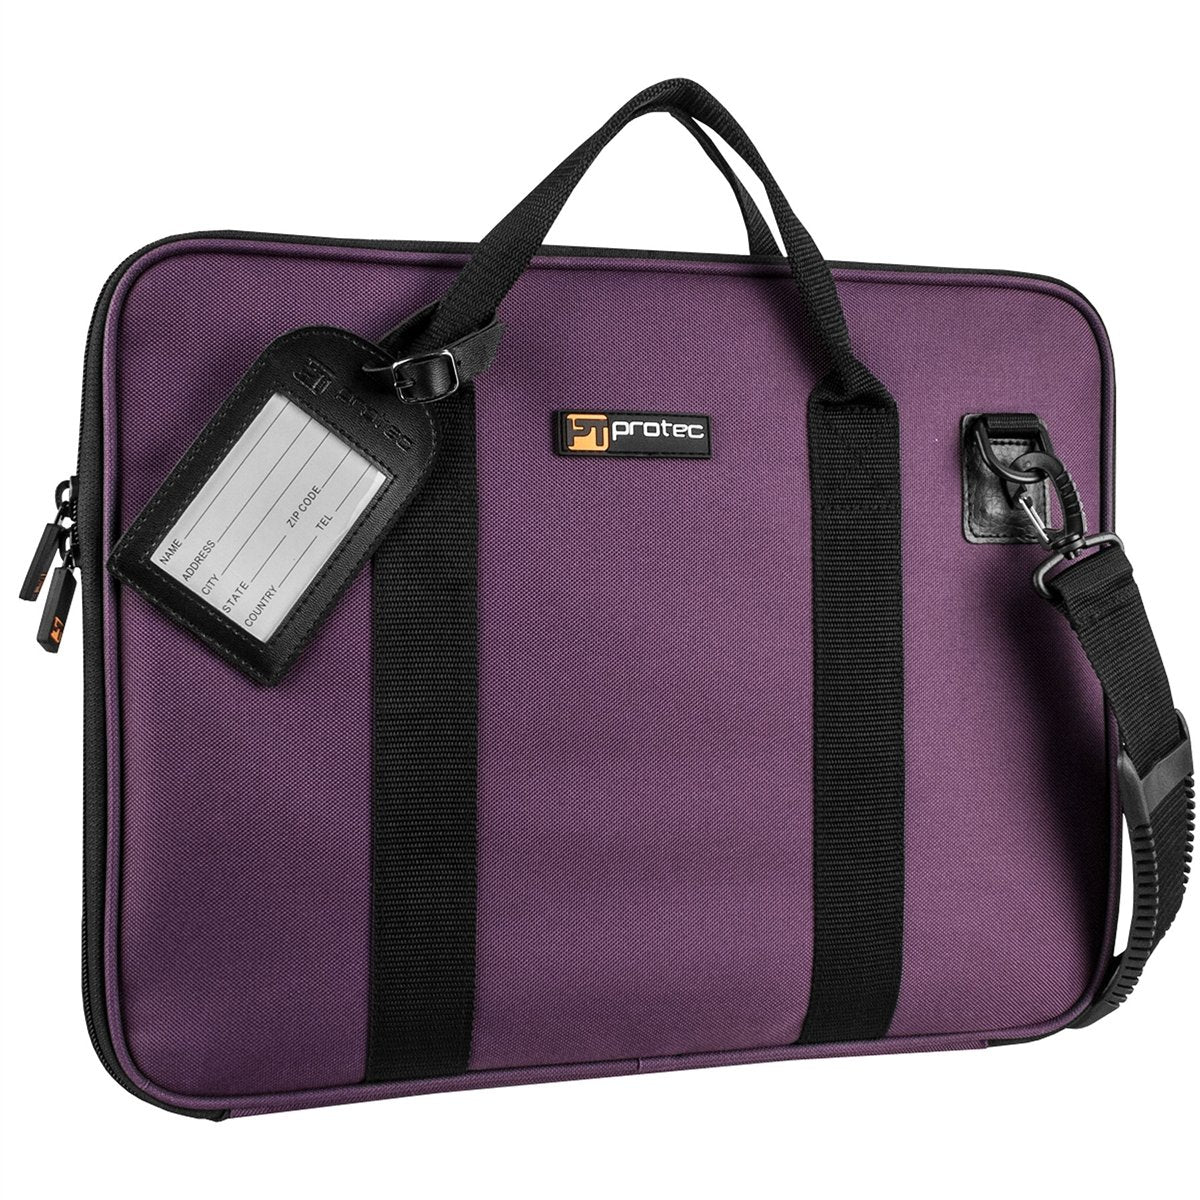 Protec - Slim Portfolio Bag-Accessories-Protec-Purple-Music Elements